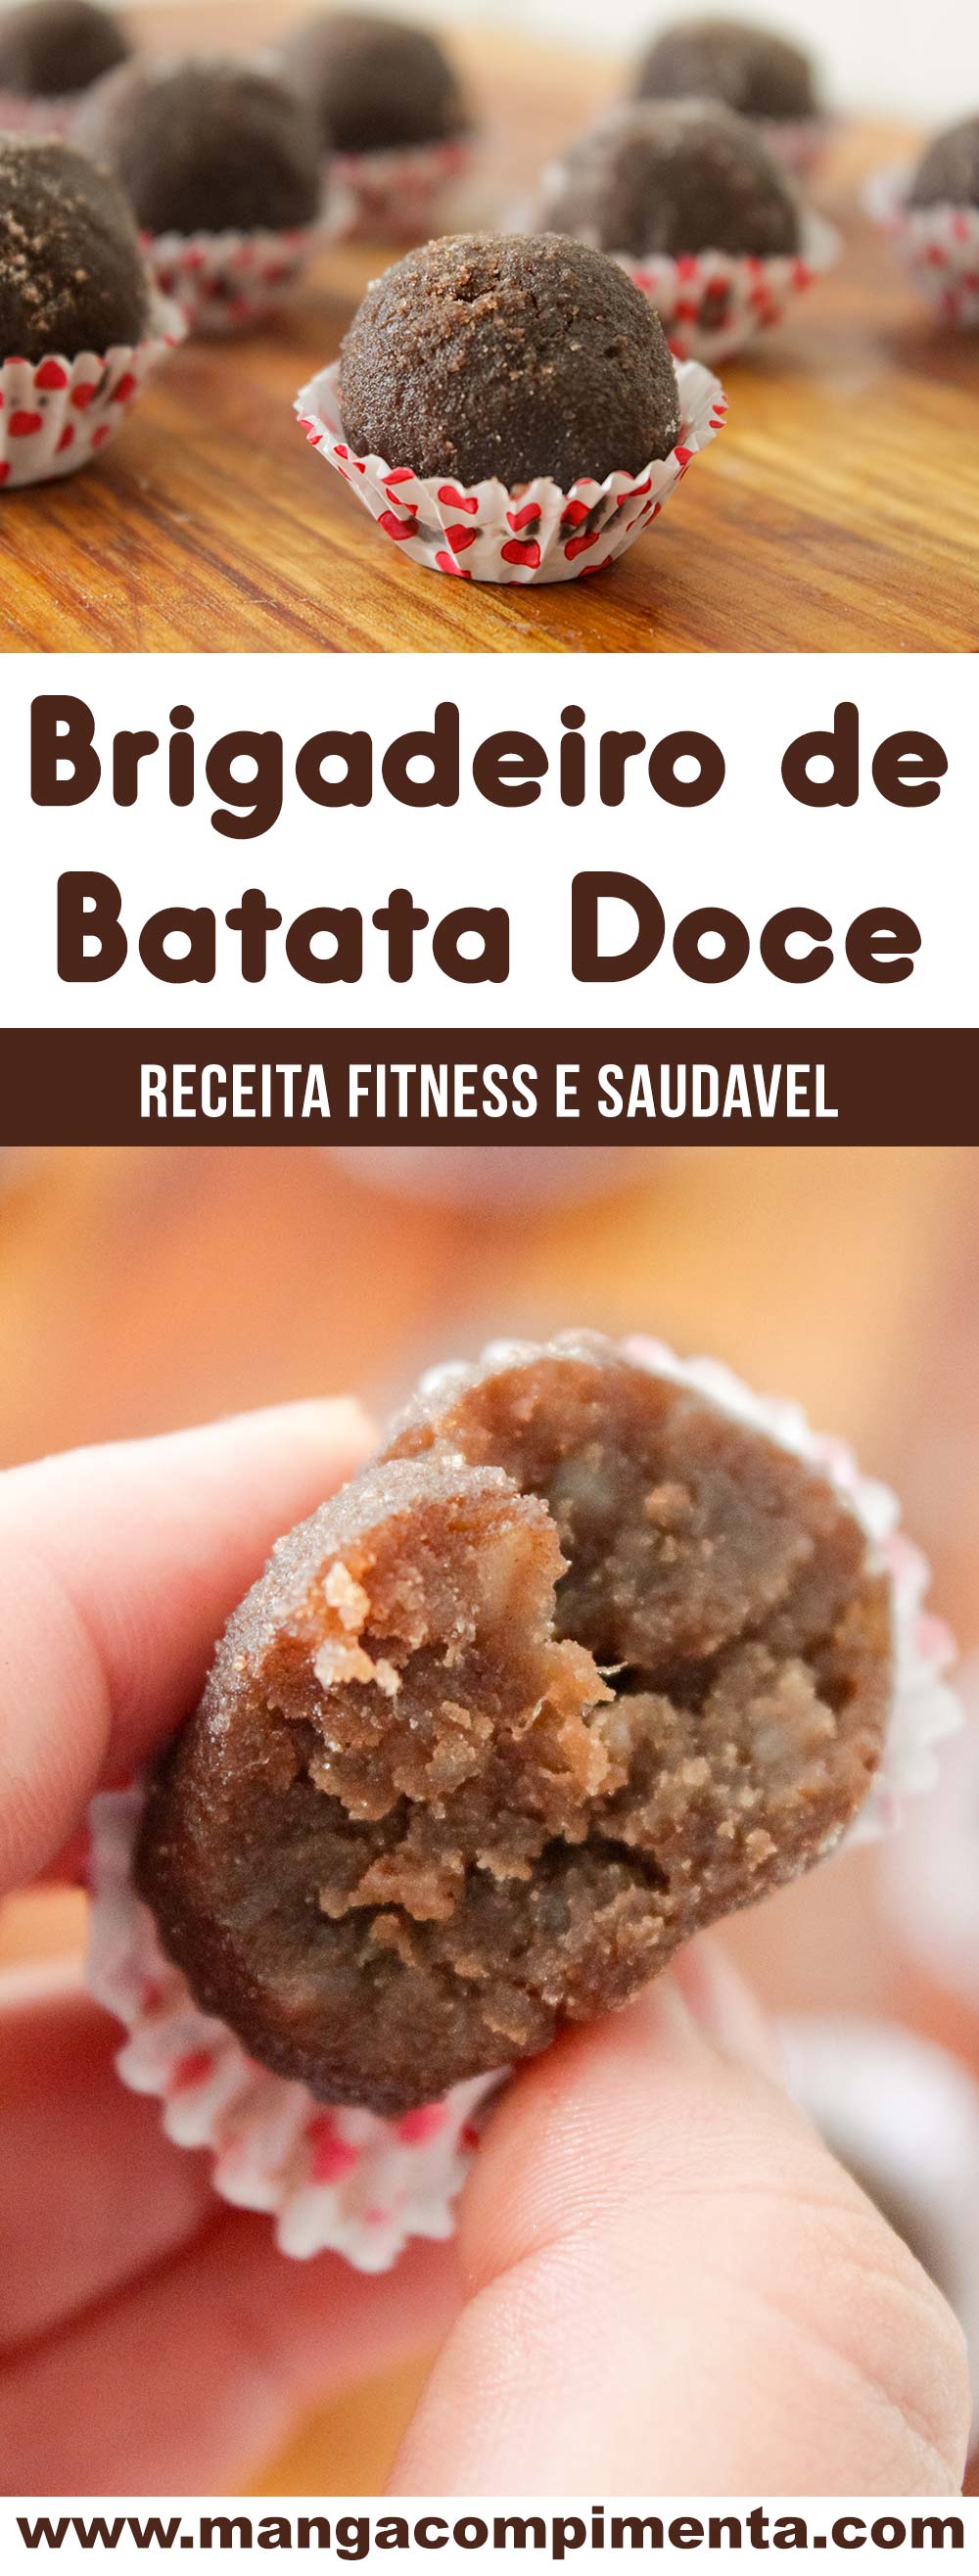 Brigadeiro de Batata Doce com Chocolate - um docinho super saudável e delicioso!